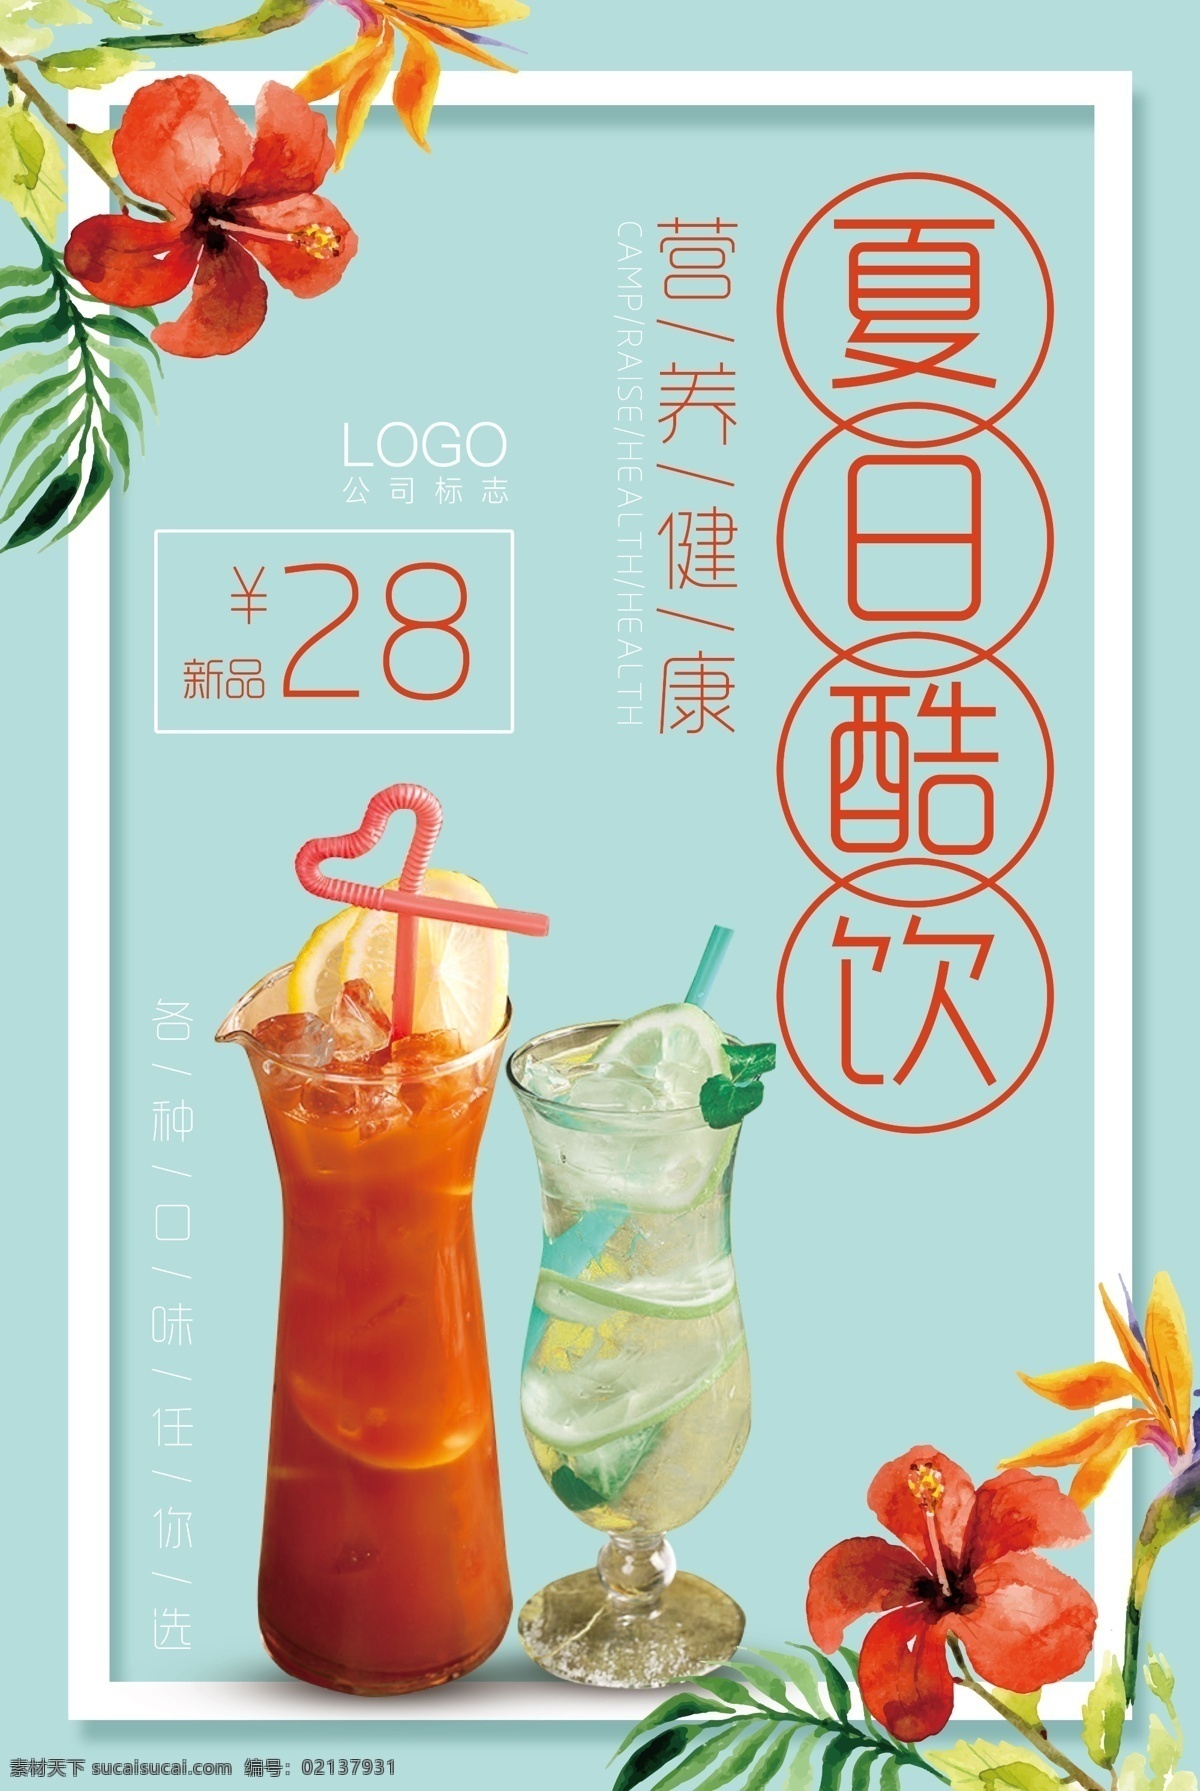 饮品海拔图片 饮料 炒酸奶 冷饮 奶茶 新品展示 促销